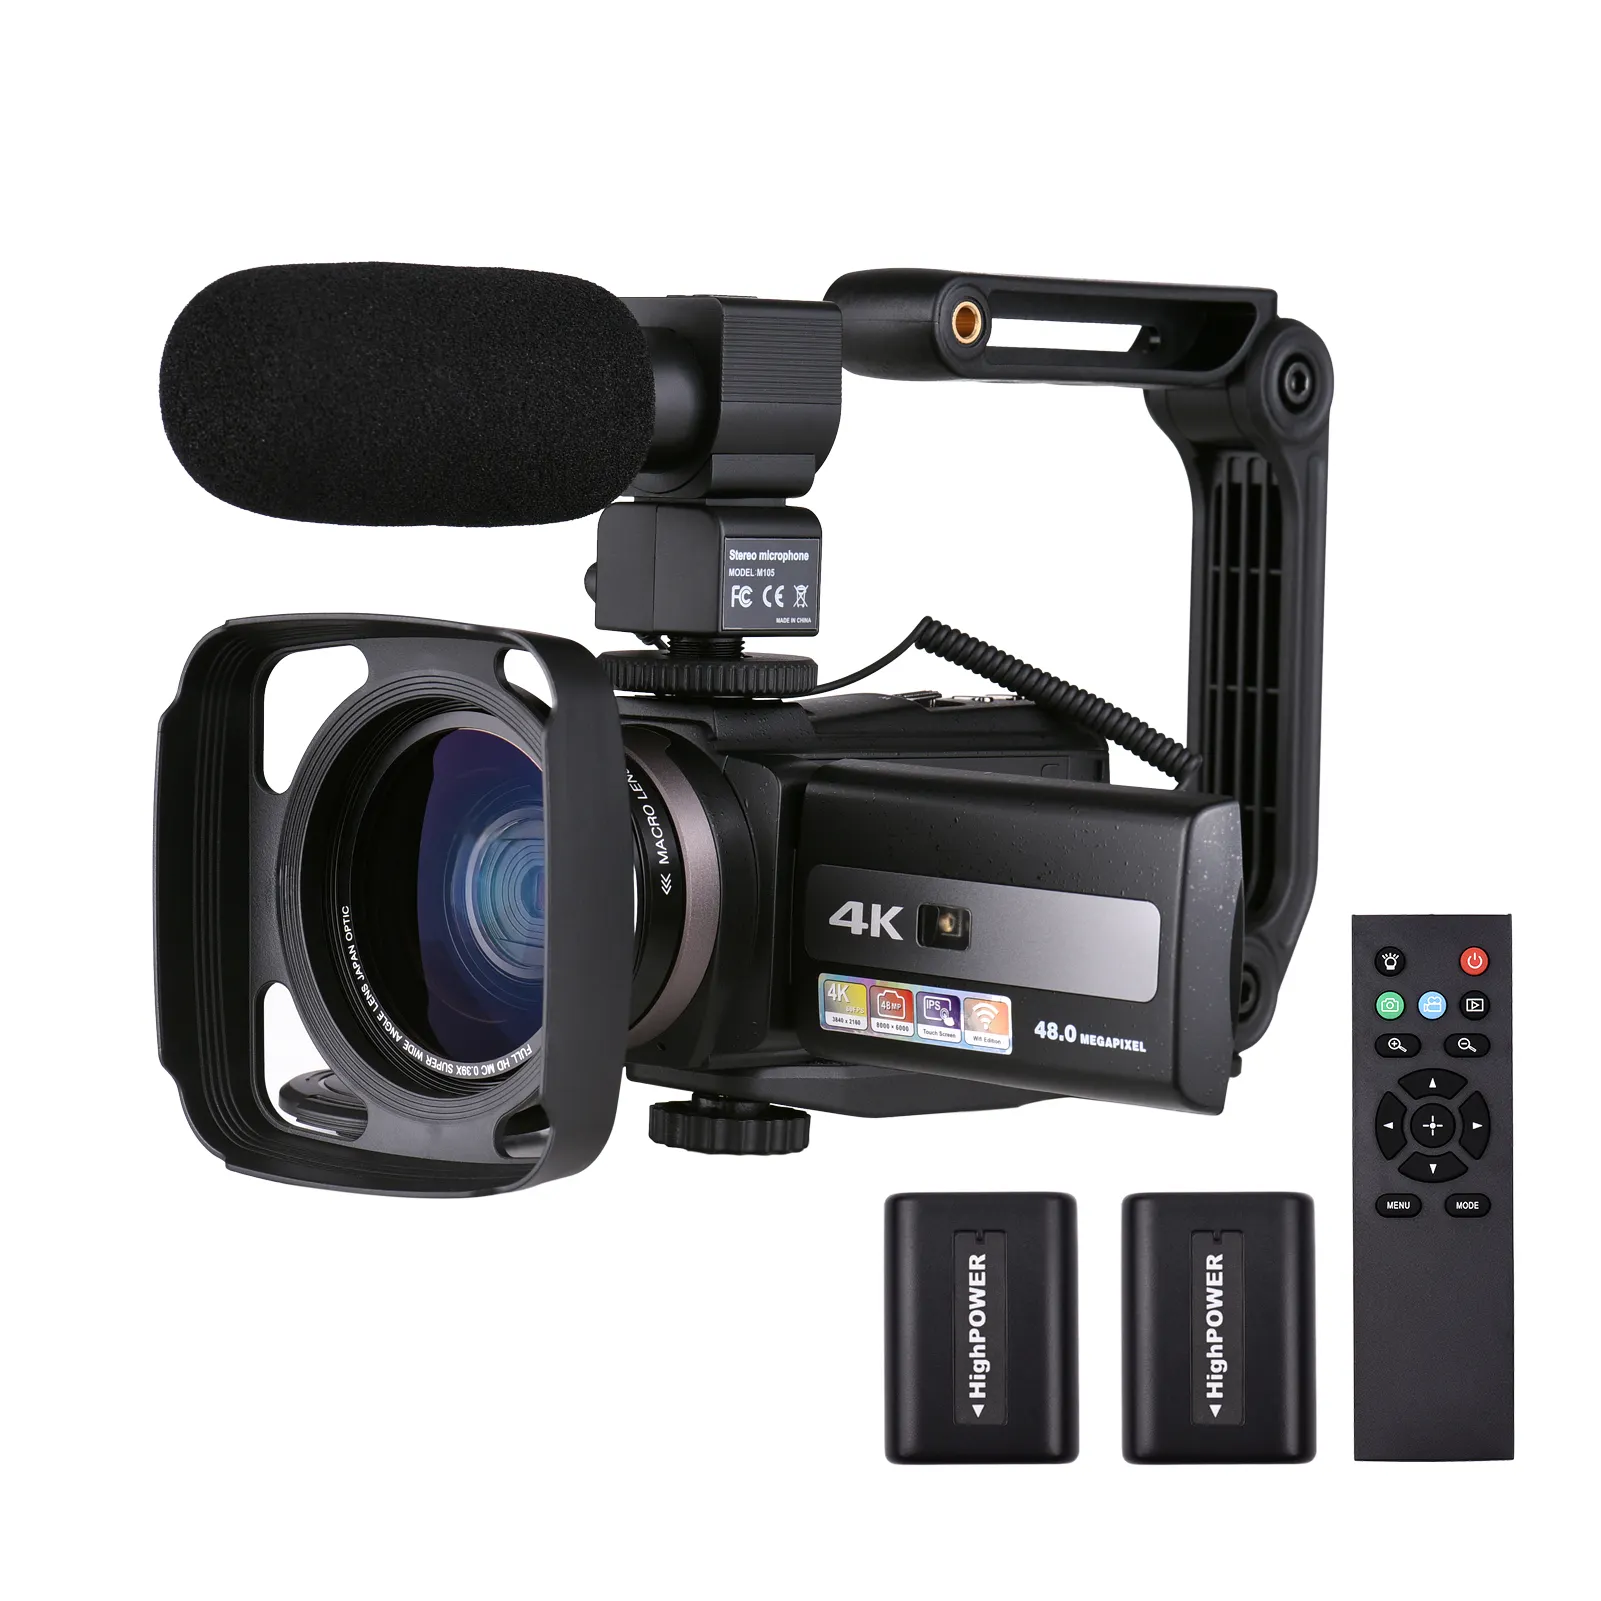 Cámara de vídeo digital 4k, directa de fábrica China, para transmisión en vivo, fotografía y vídeo